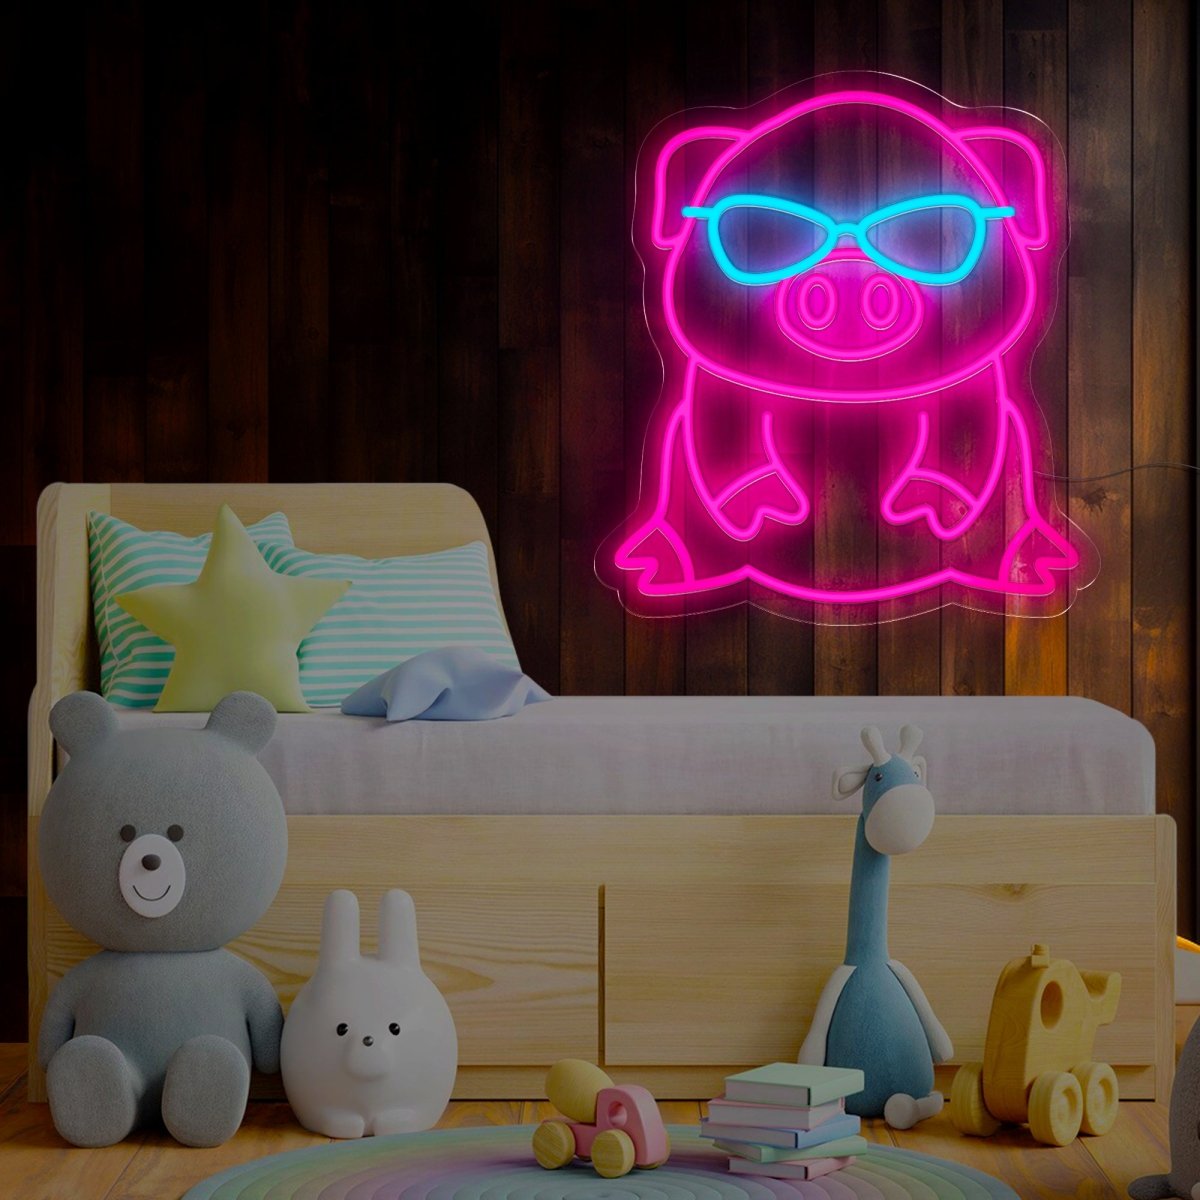 Cool Pig Neon Sign - Reels Custom